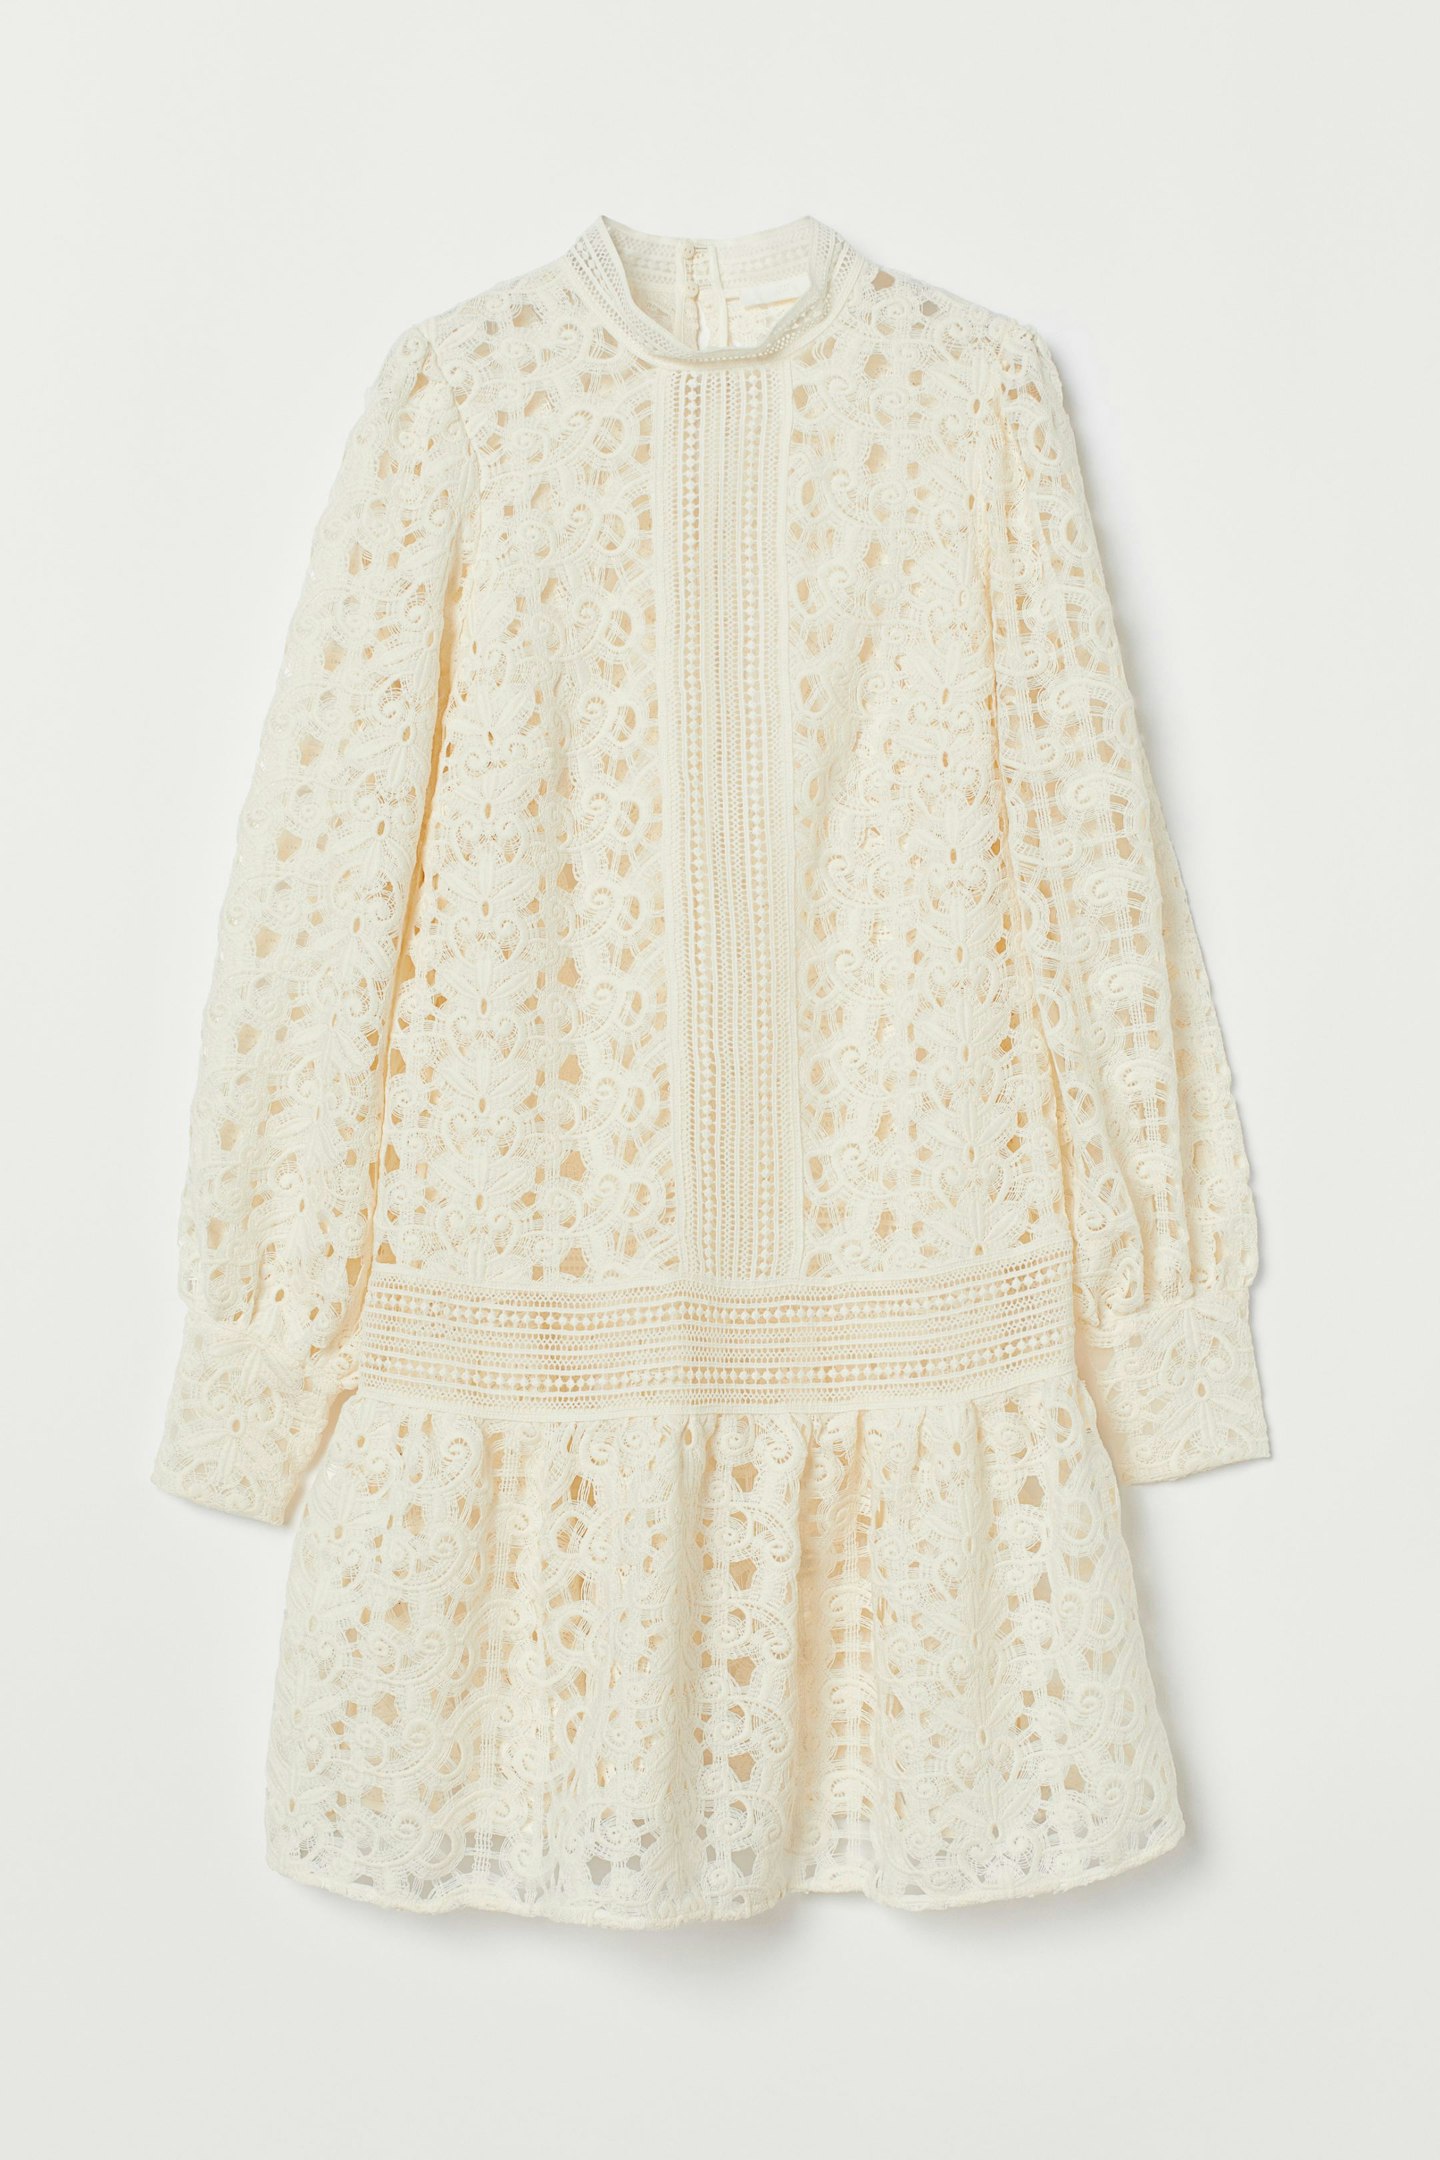 H&M, Lace Minidress, £39.99